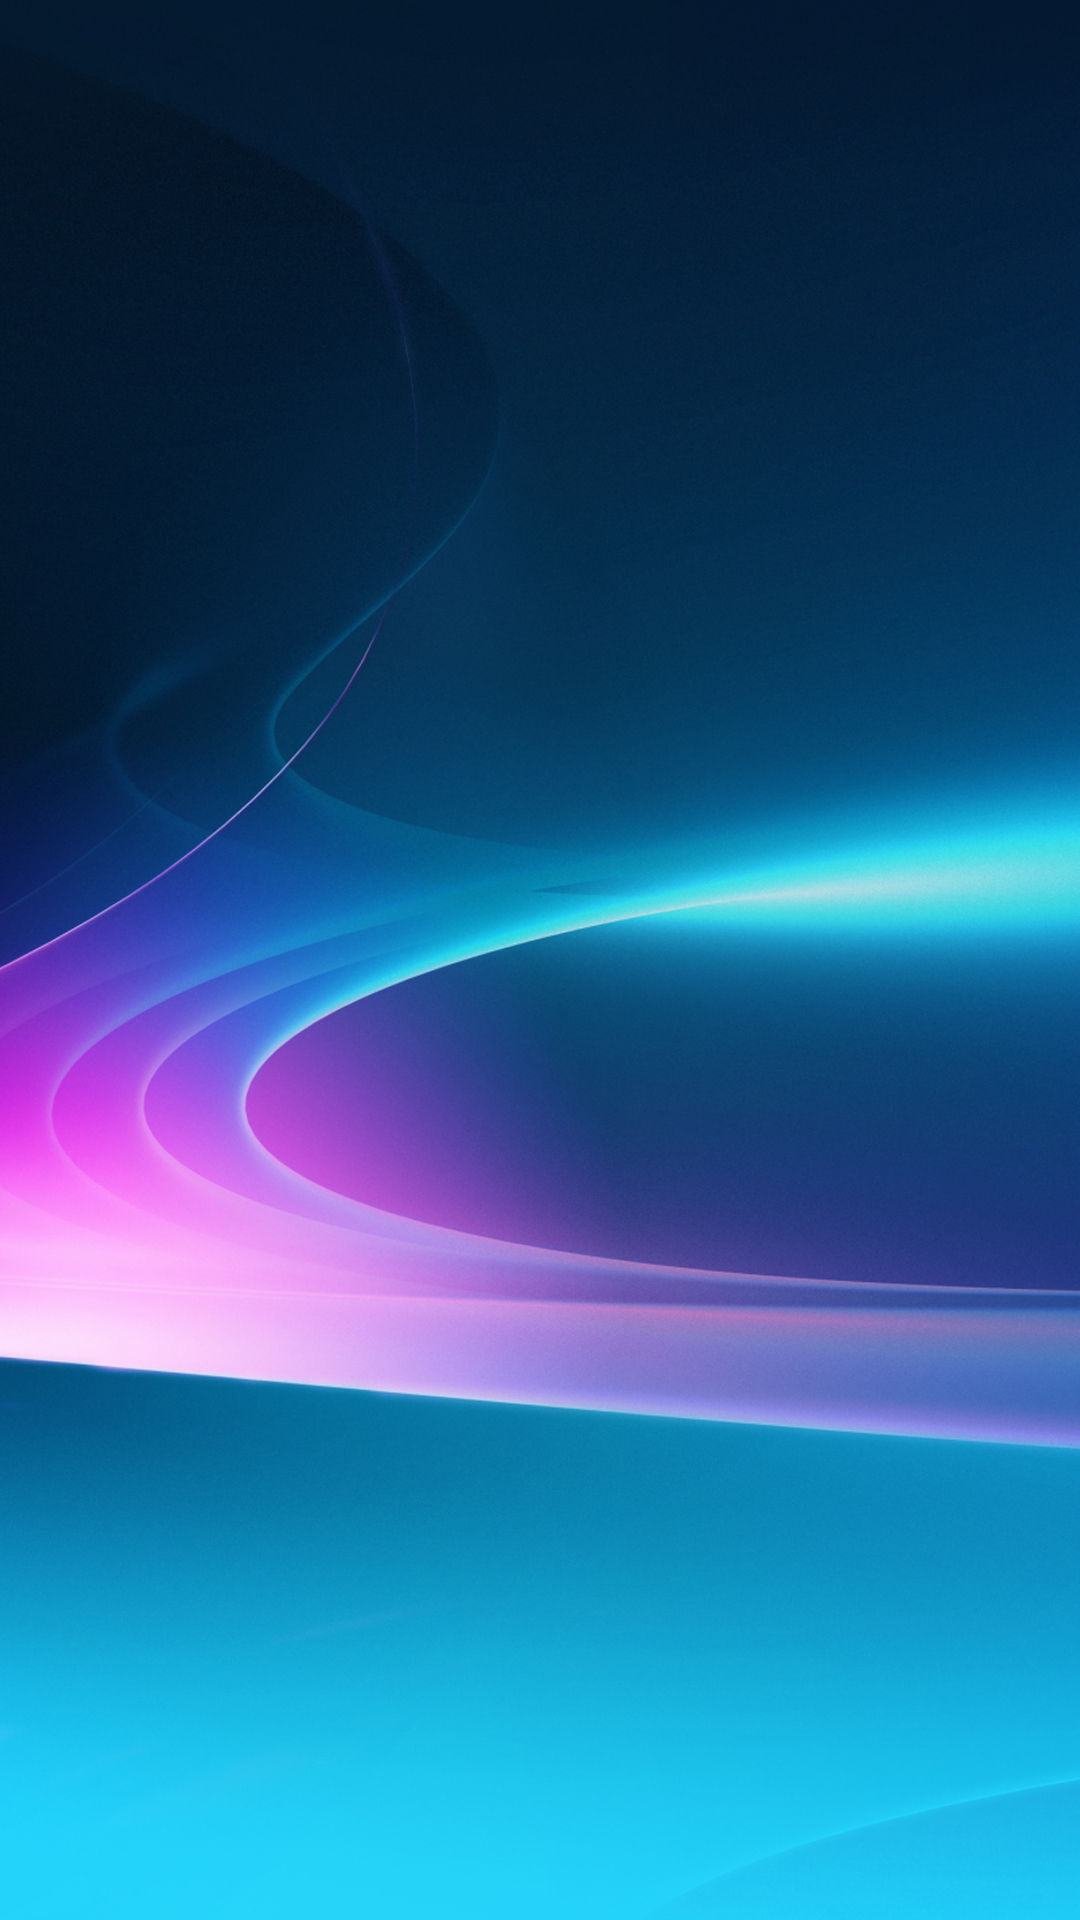 micromax fondos de pantalla hd,azul,atmósfera,cielo,ligero,azul eléctrico